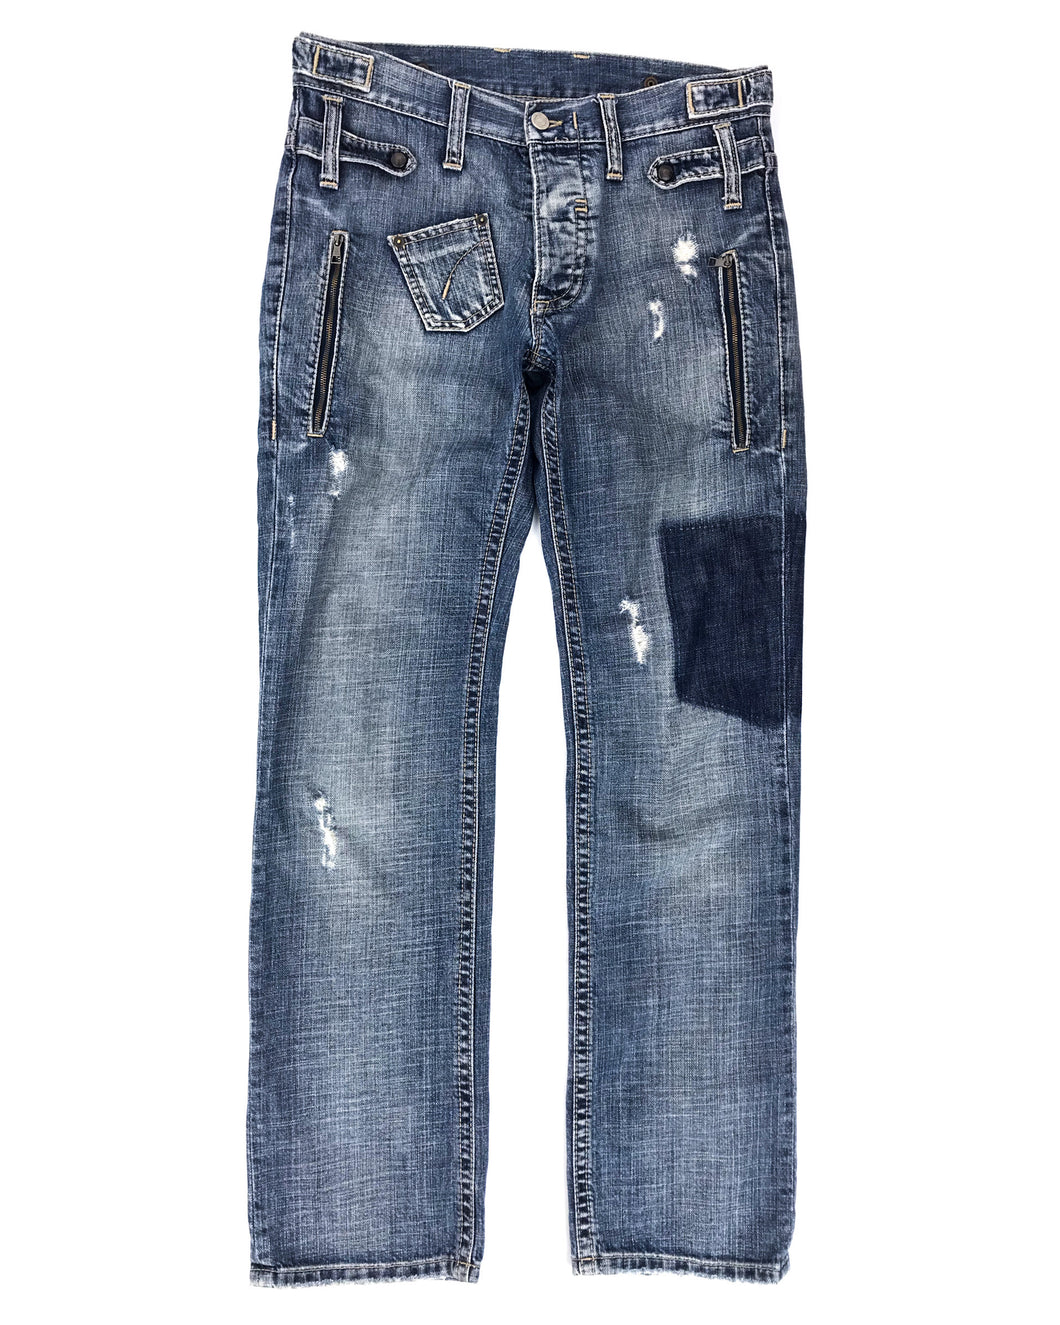 NEIL BARRETT Distressed Denim Jeans (Early 2000’s)(30)